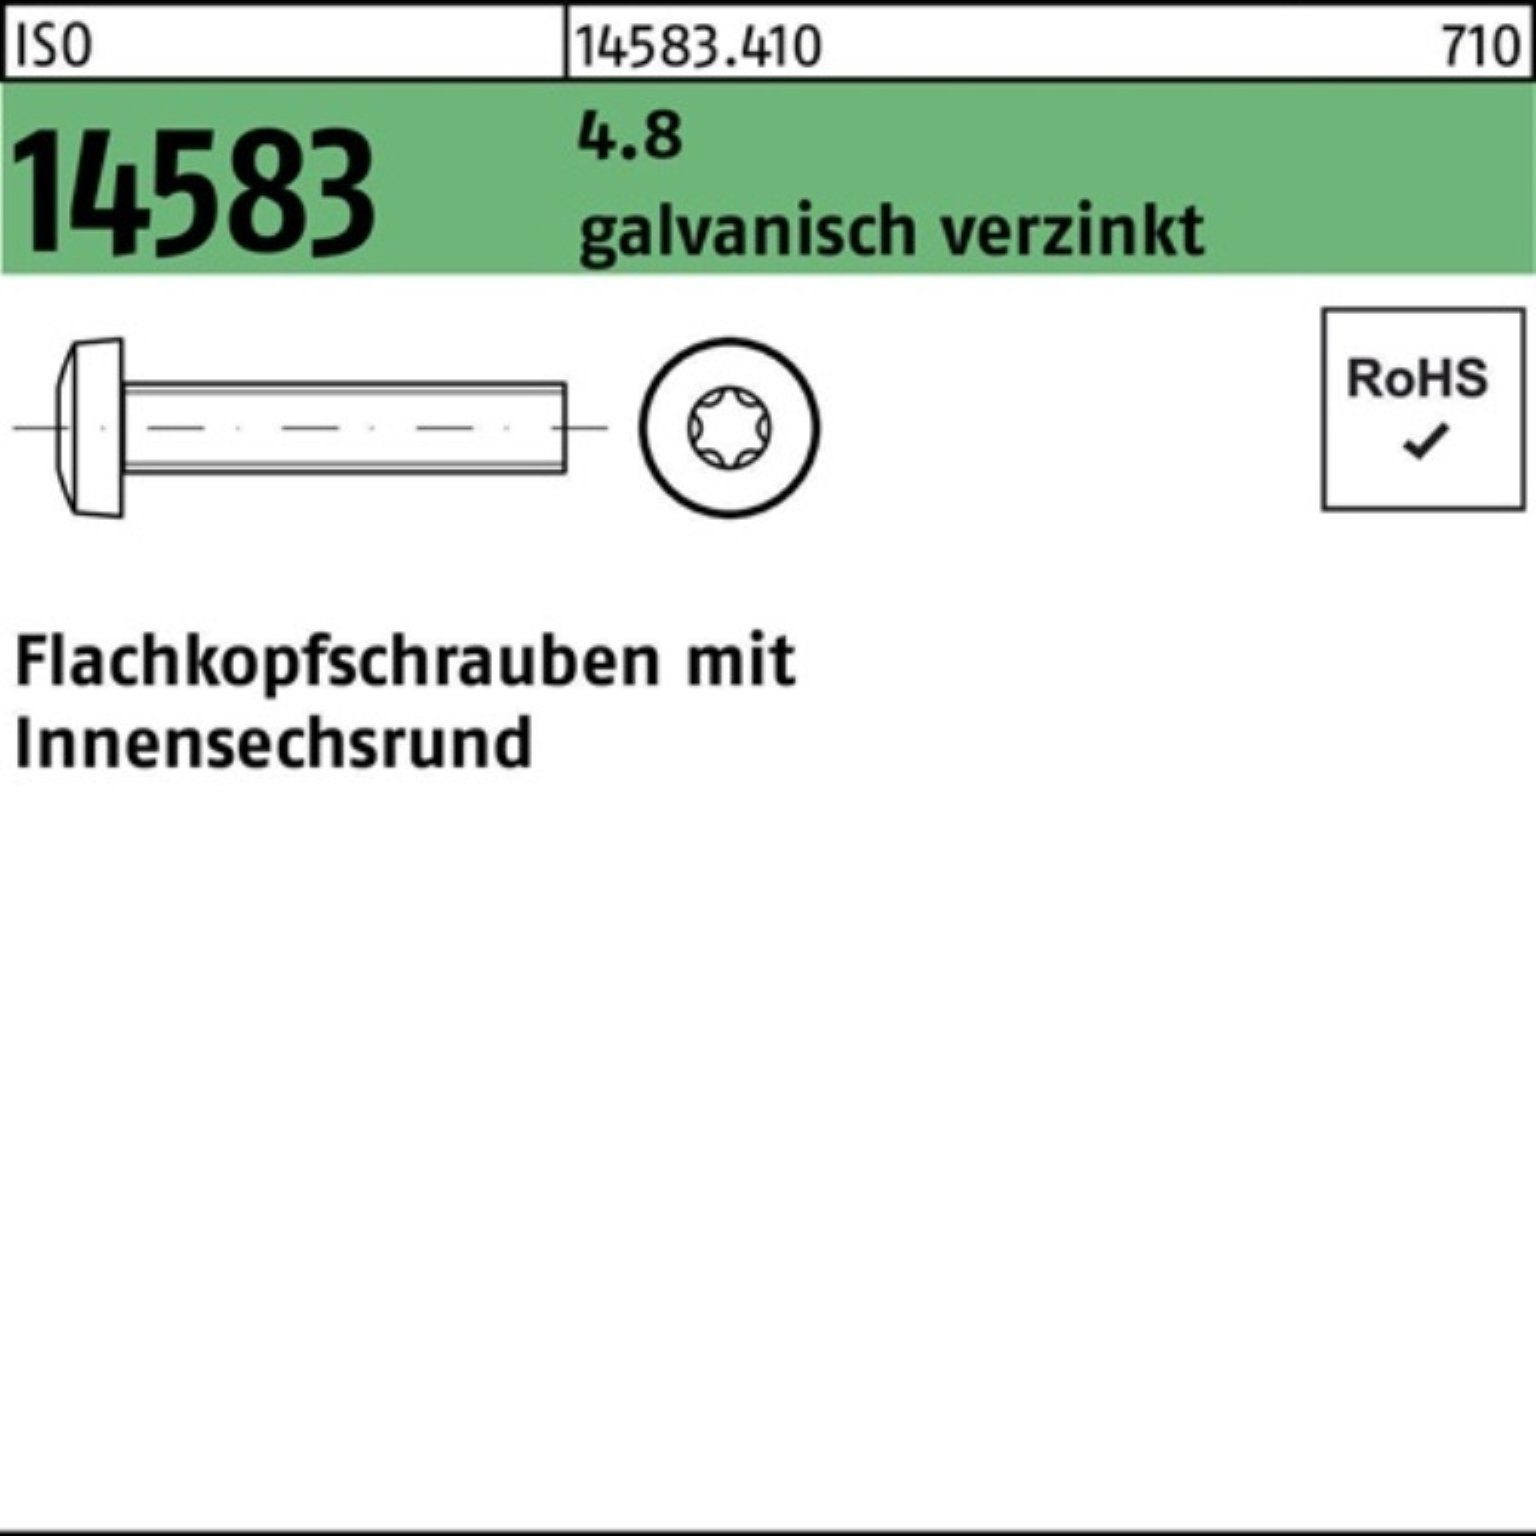 Pack ISR M6x20 1000S galv.verz. Schraube 4.8 1000er ISO Reyher Flachkopfschraube 14583